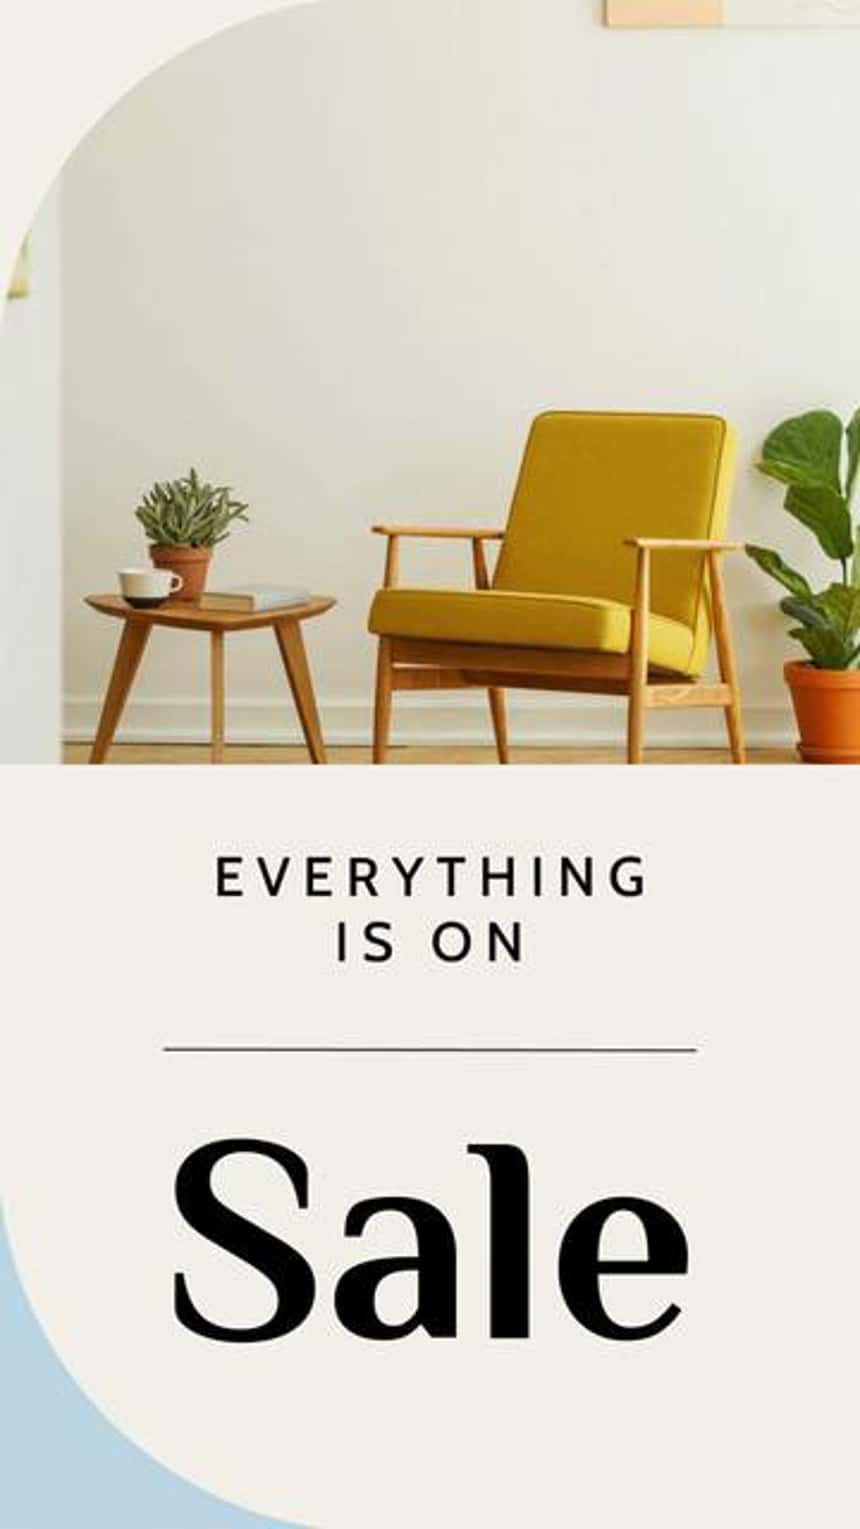 Plantilla de anuncio de video en Instagram para un negocio de muebles con una imagen de una silla amarilla, plantas y una mesa auxiliar. El texto de la imagen dice: Everything is on sale.